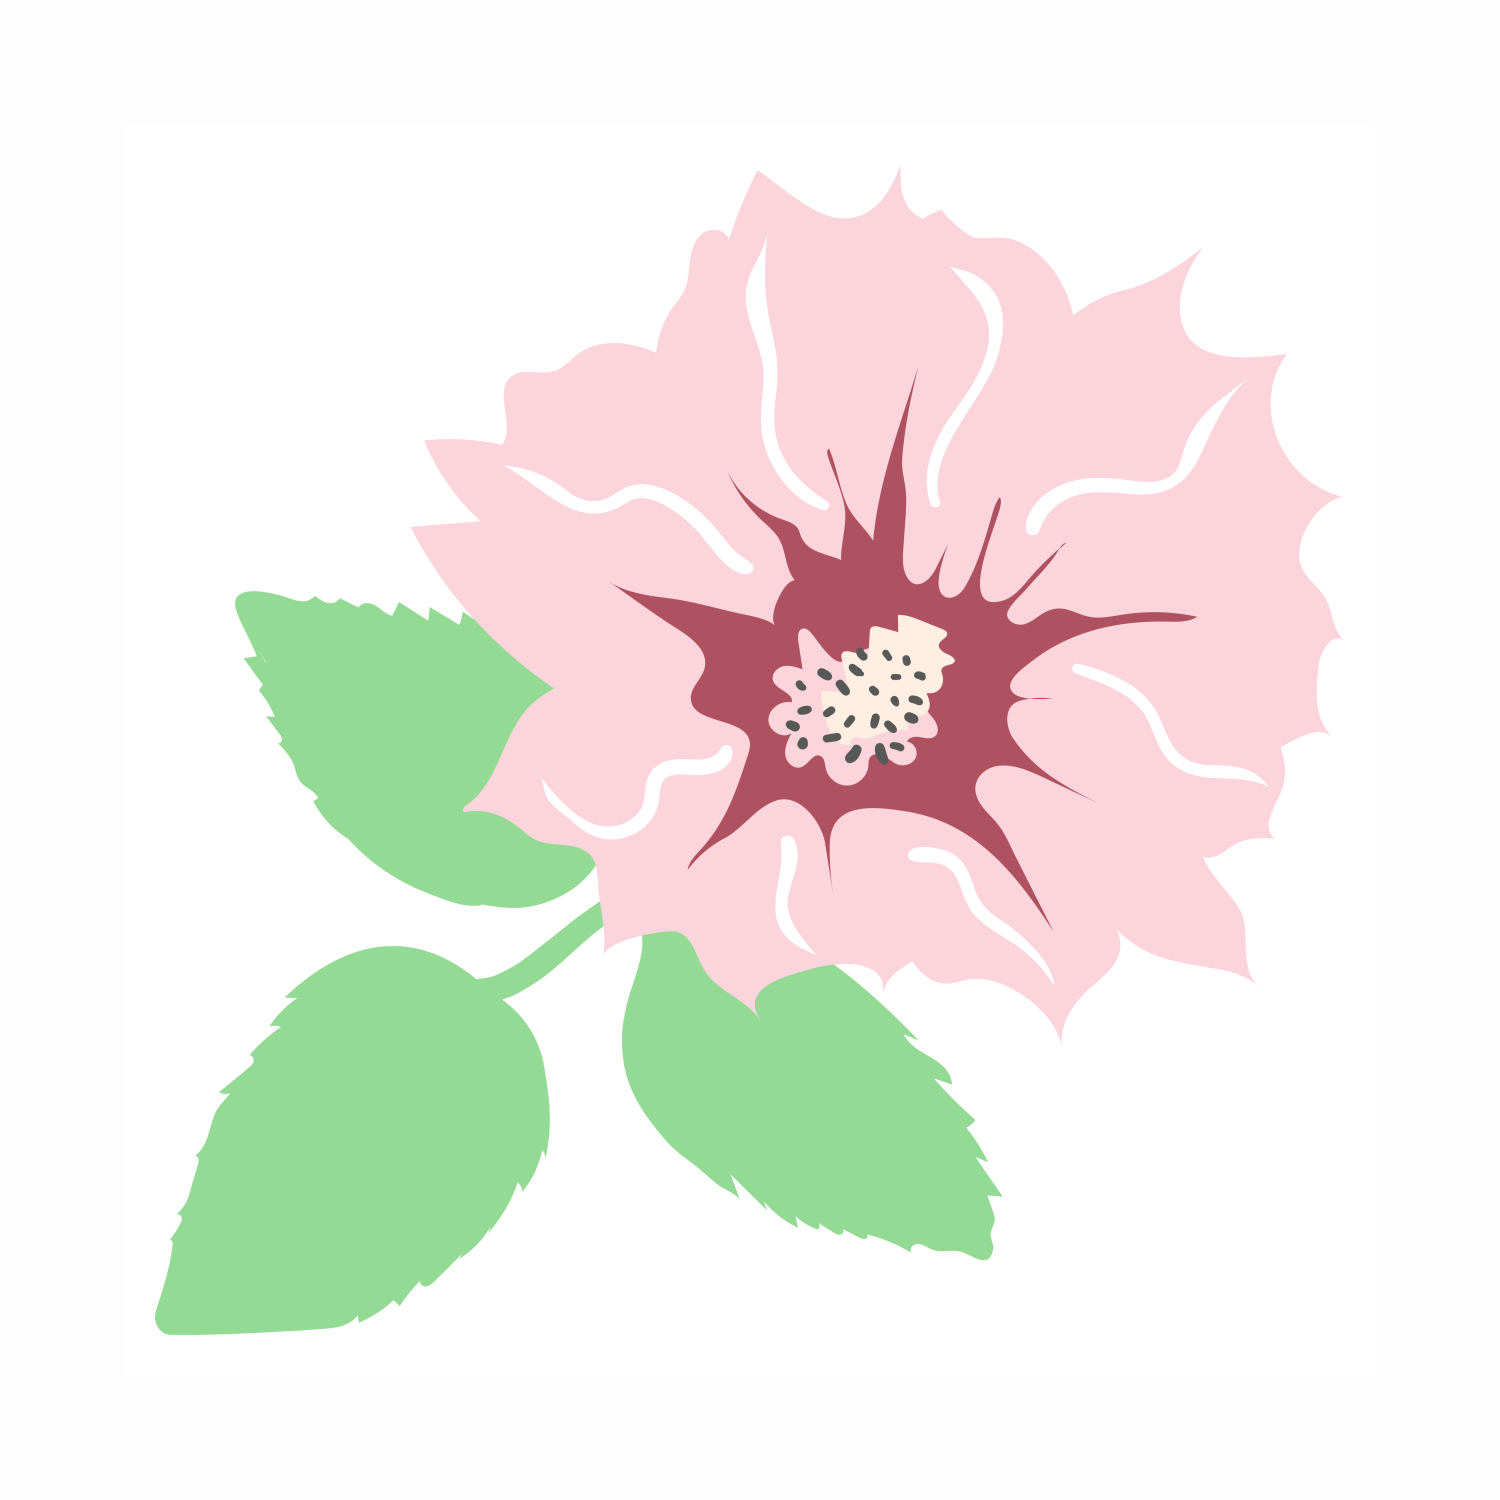 Cistus Incanus (Rockrose) Flower/Leaf/Stem Extract: A Natural Ally for Radiant Skin